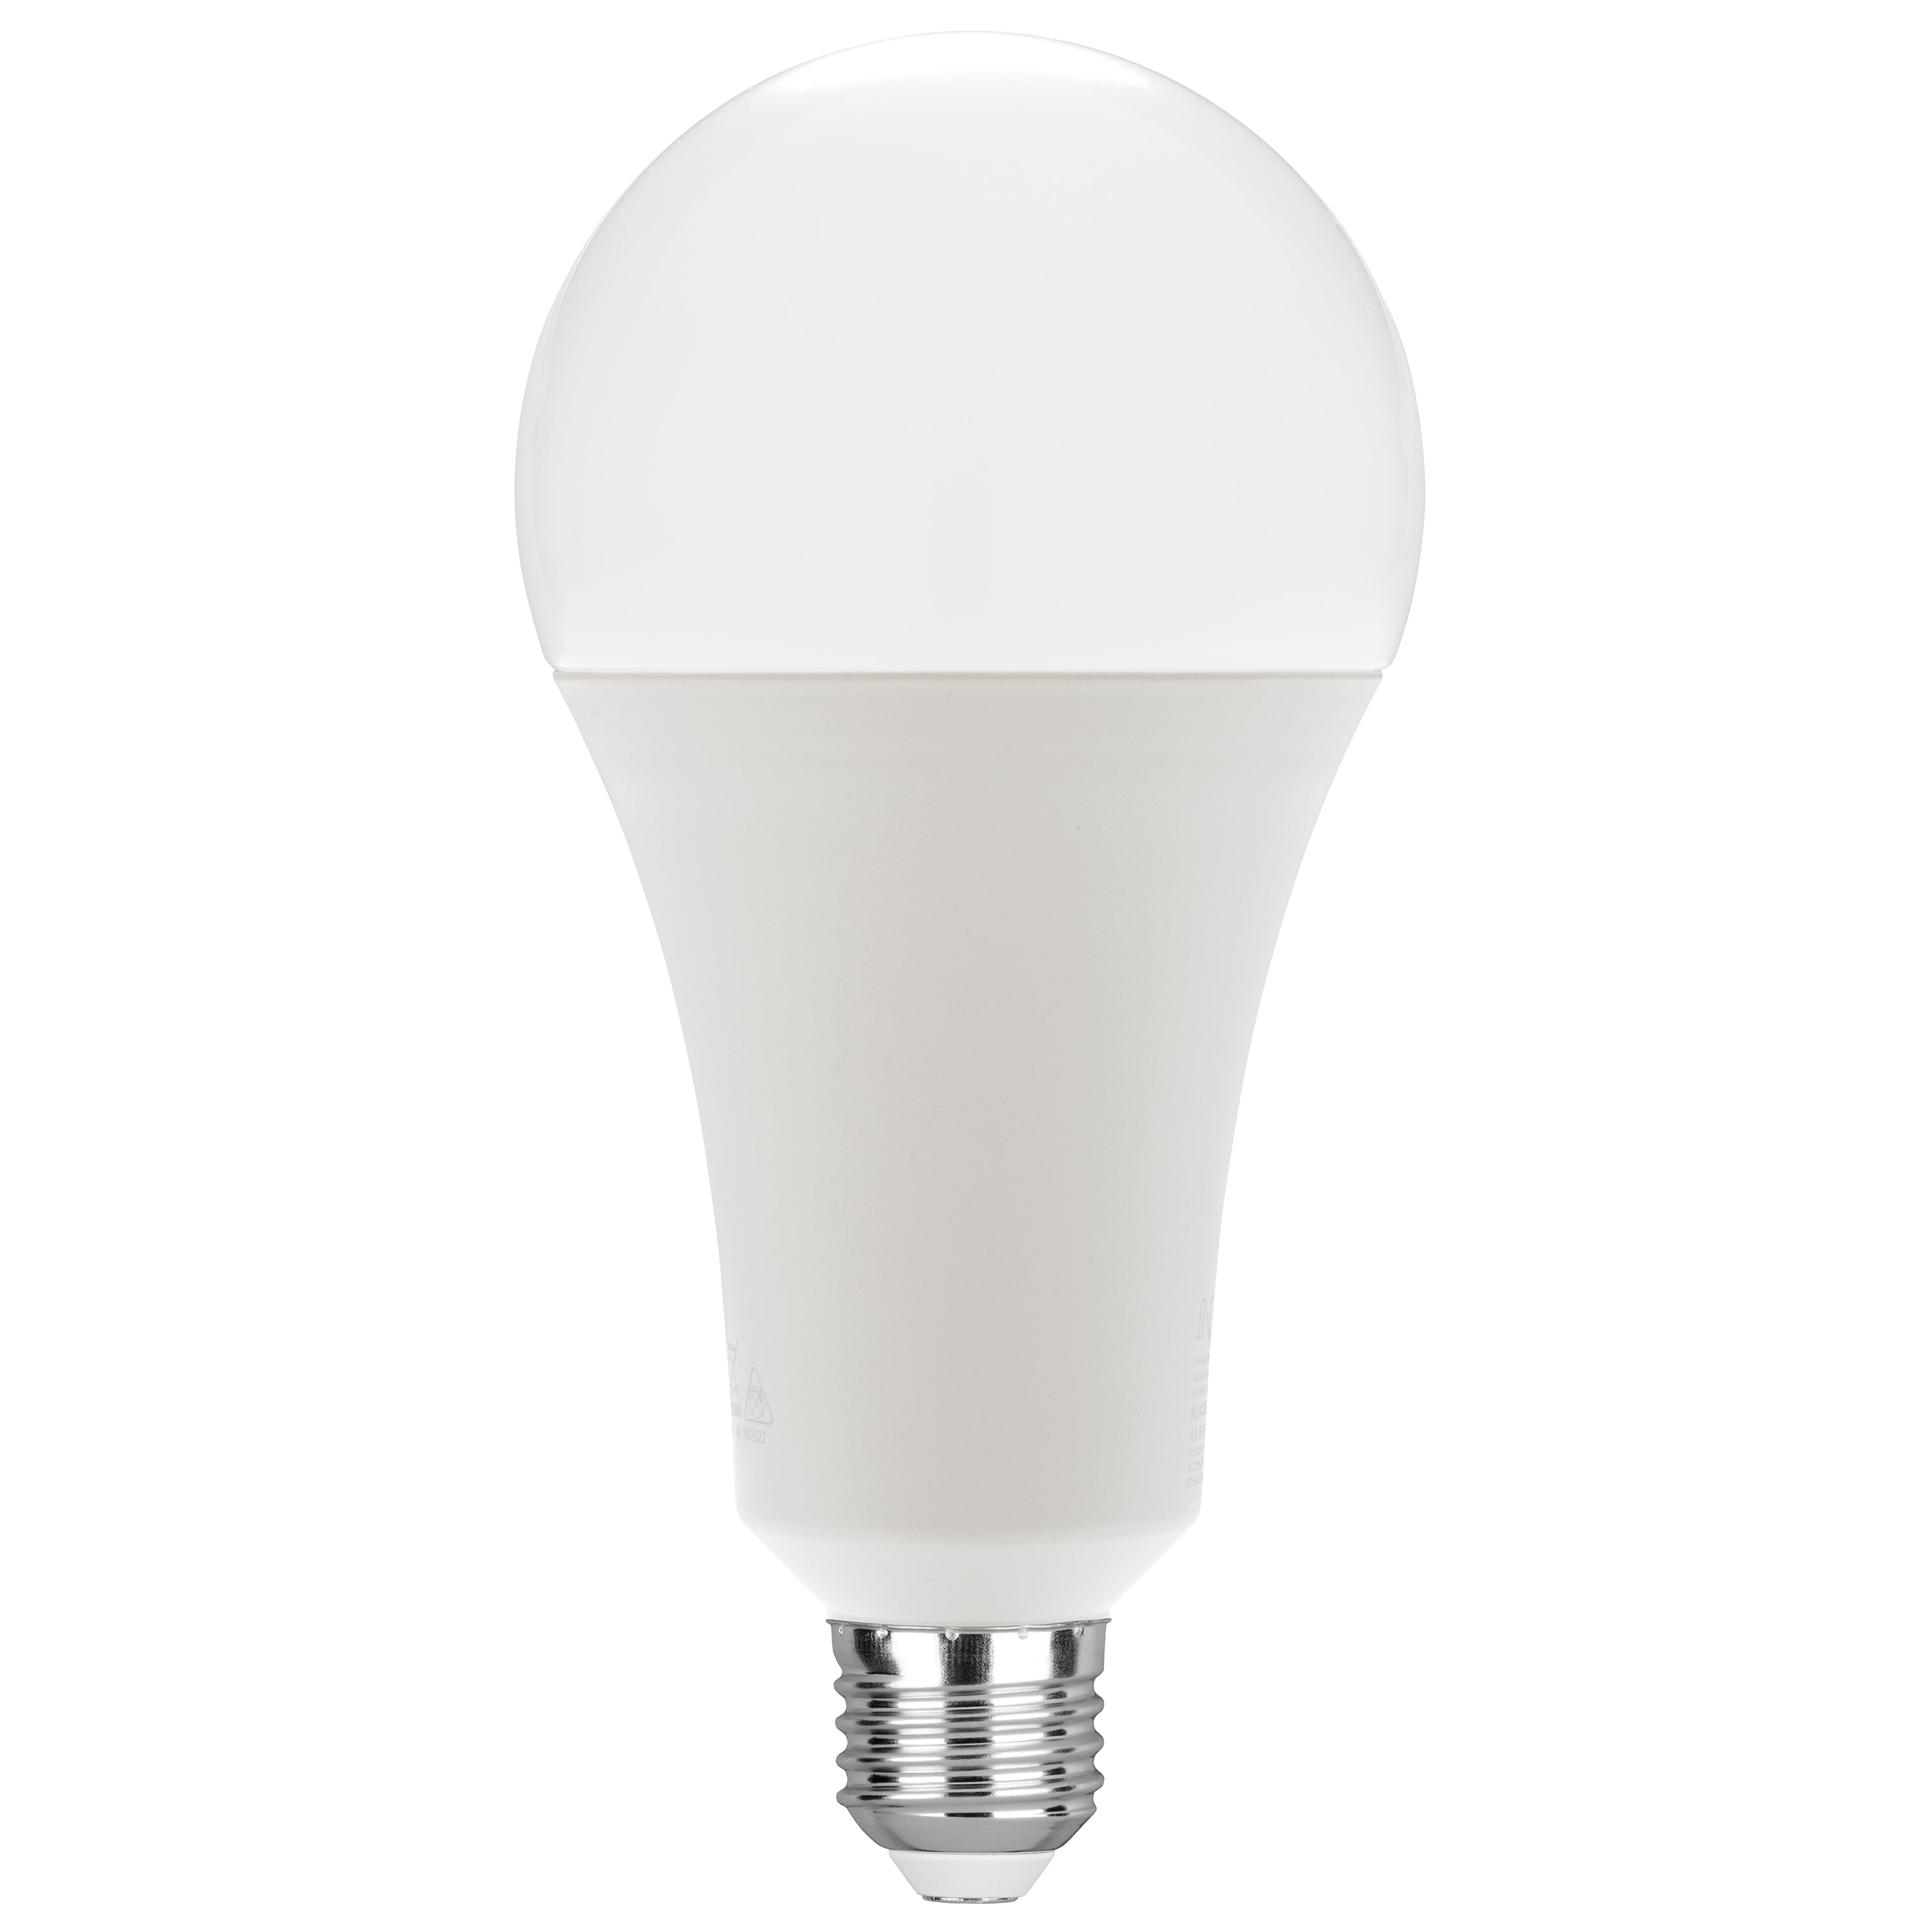 Ampoule LED KLASSIC lumière froide 25W E27 3582L 184mm 